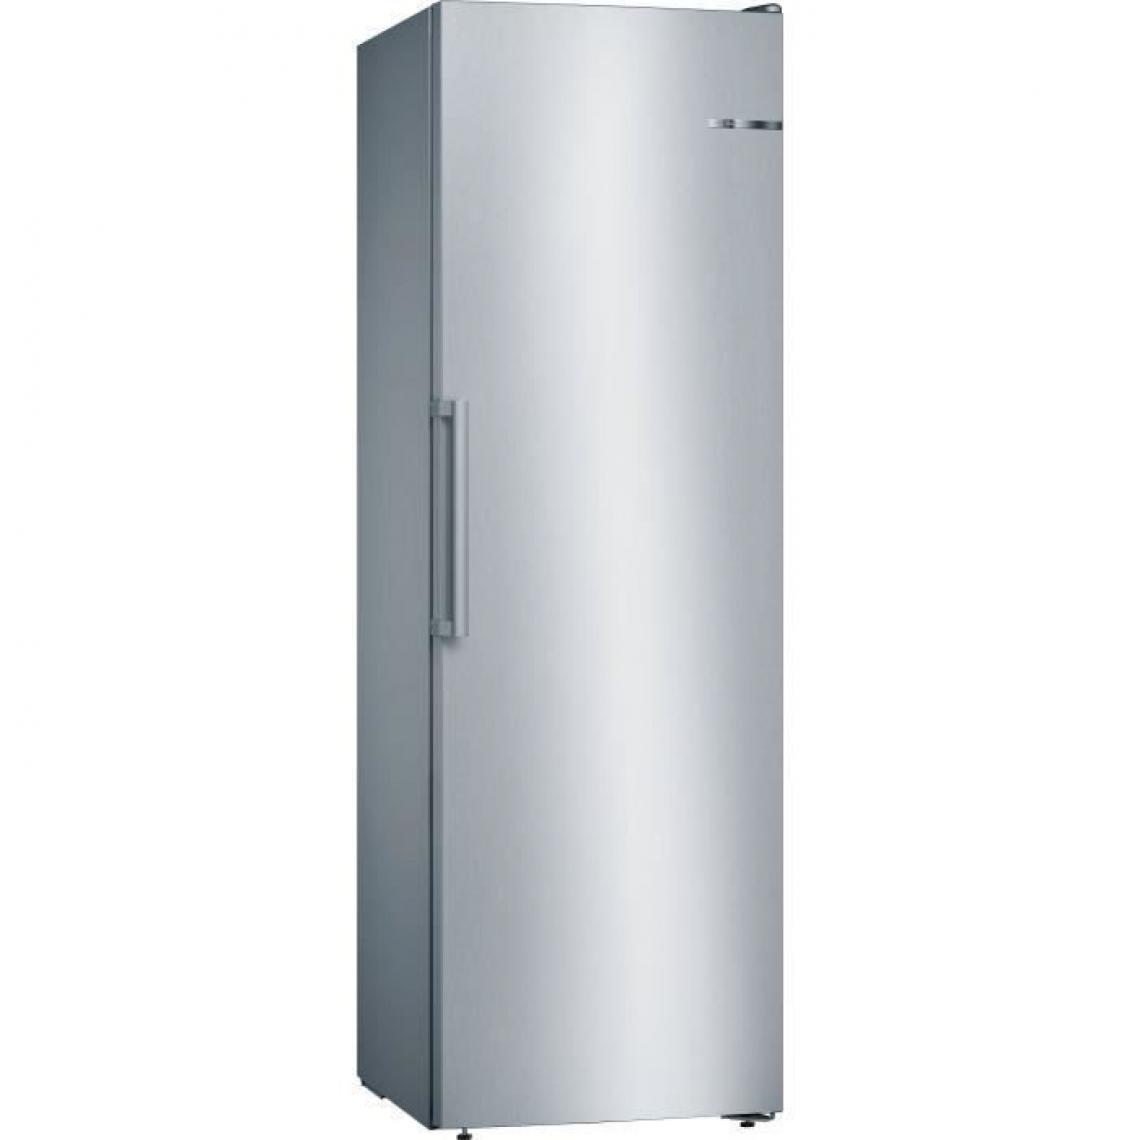 Bosch - Congélateur armoire GSN36VLFP - 242 L - Froid no frost multiairflow - A++ - Réfrigérateur américain